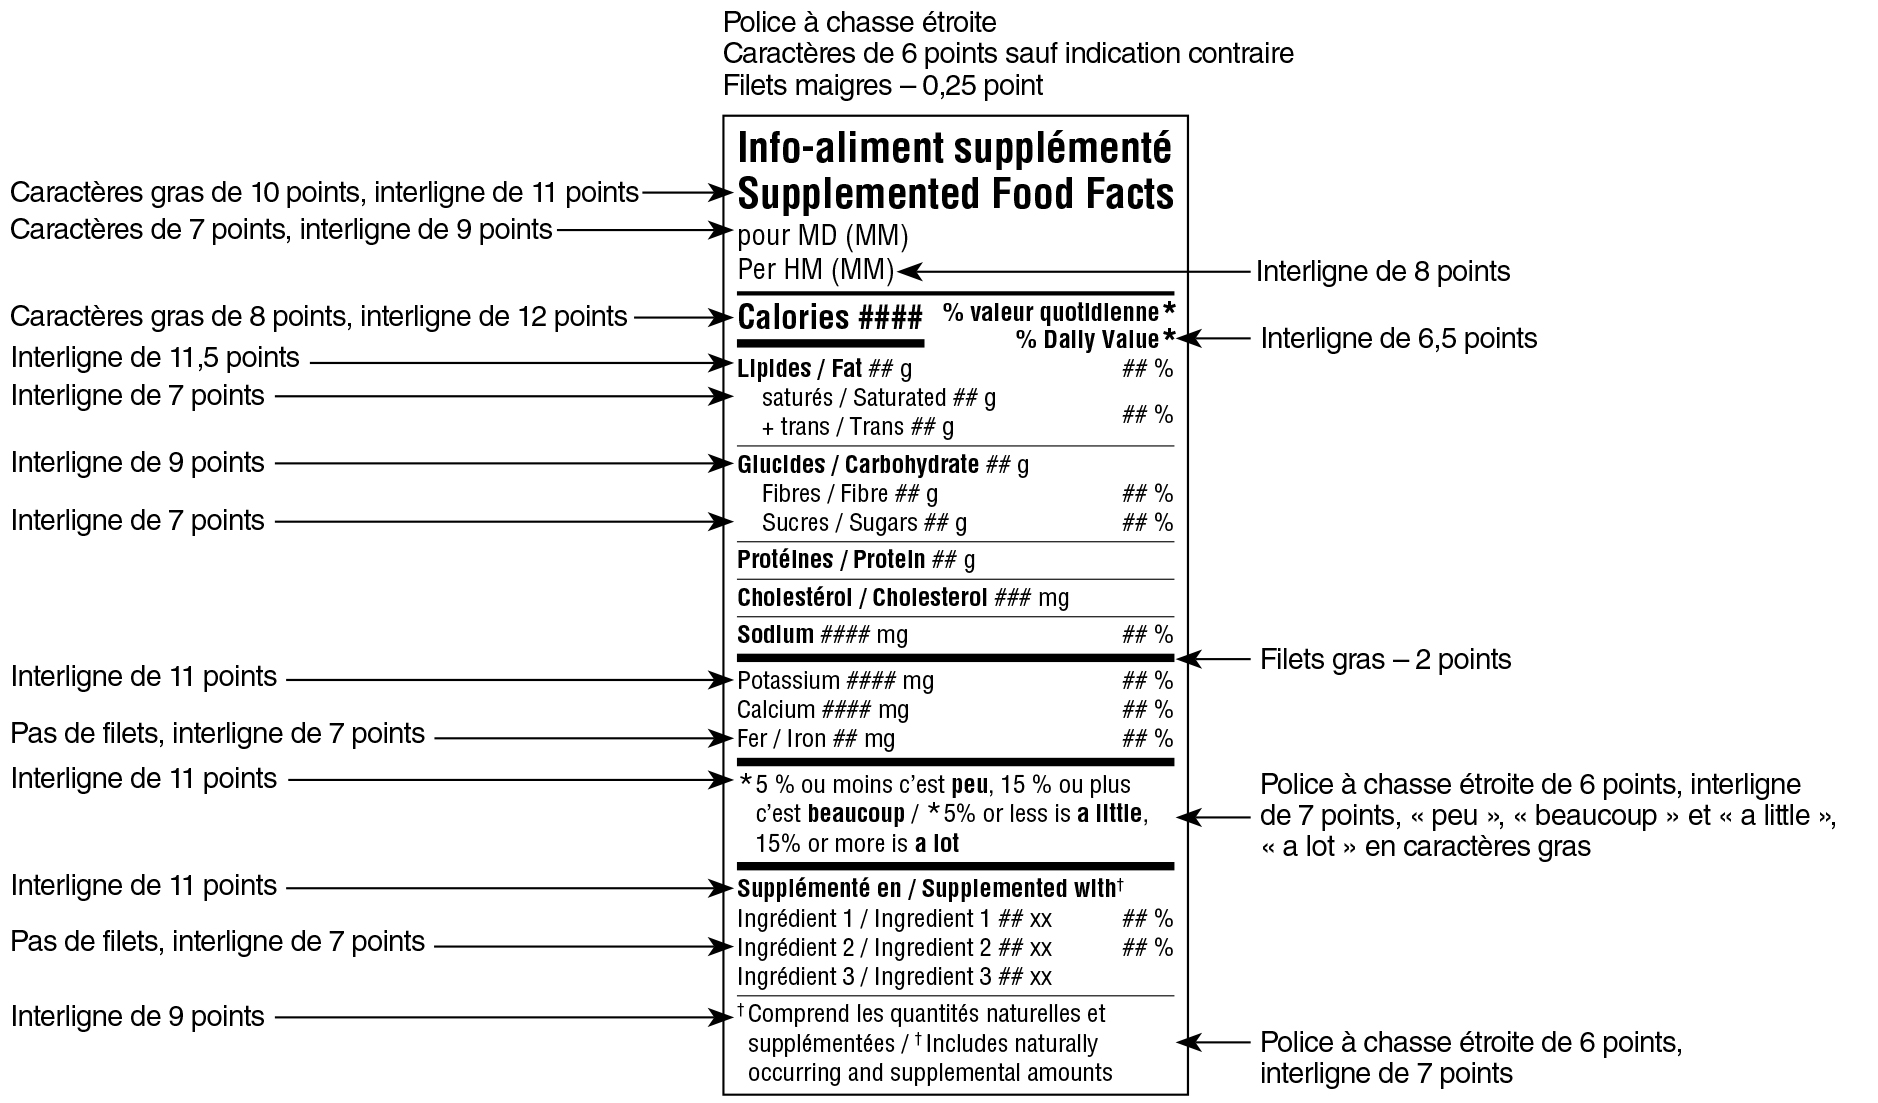 Modèle standard bilingue du tableau des renseignements sur les aliments supplémentés avec indications. Version texte ci-dessous.